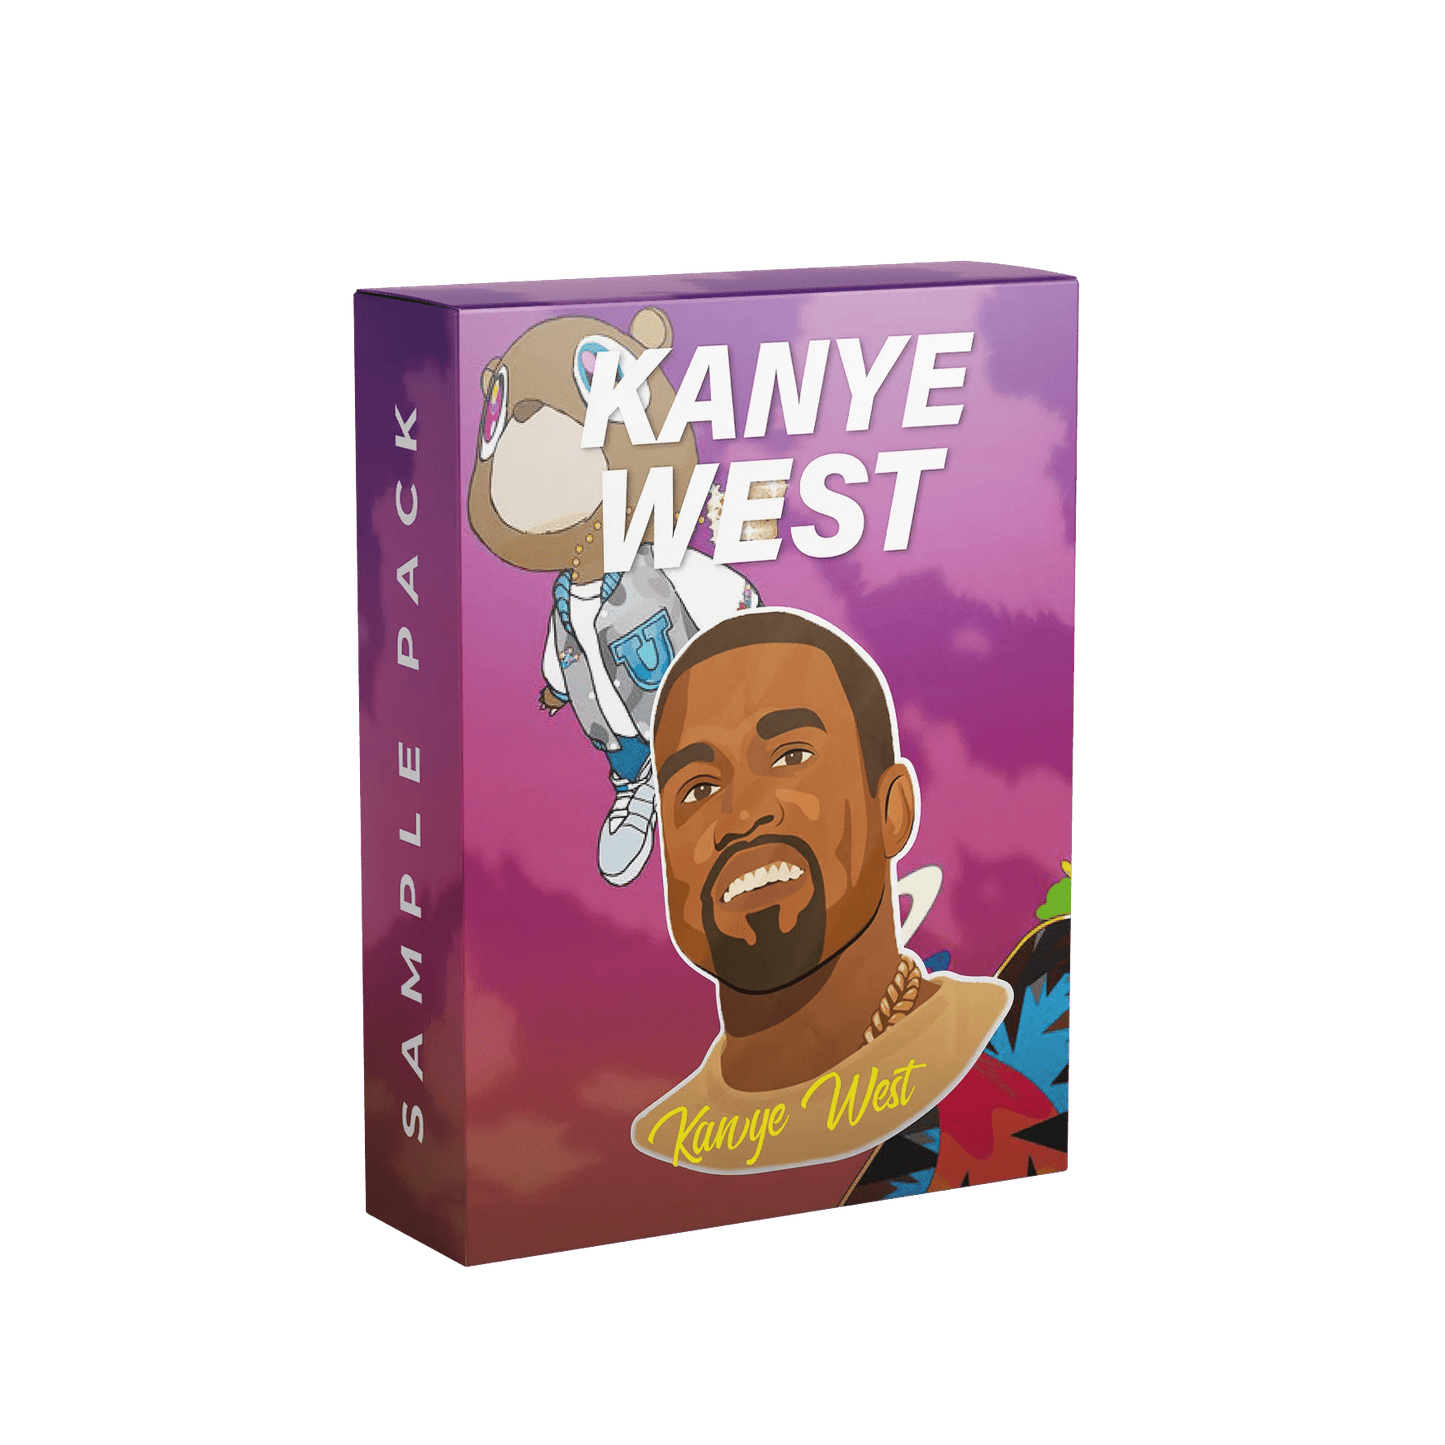 Kanye West Sample Pack Artwork